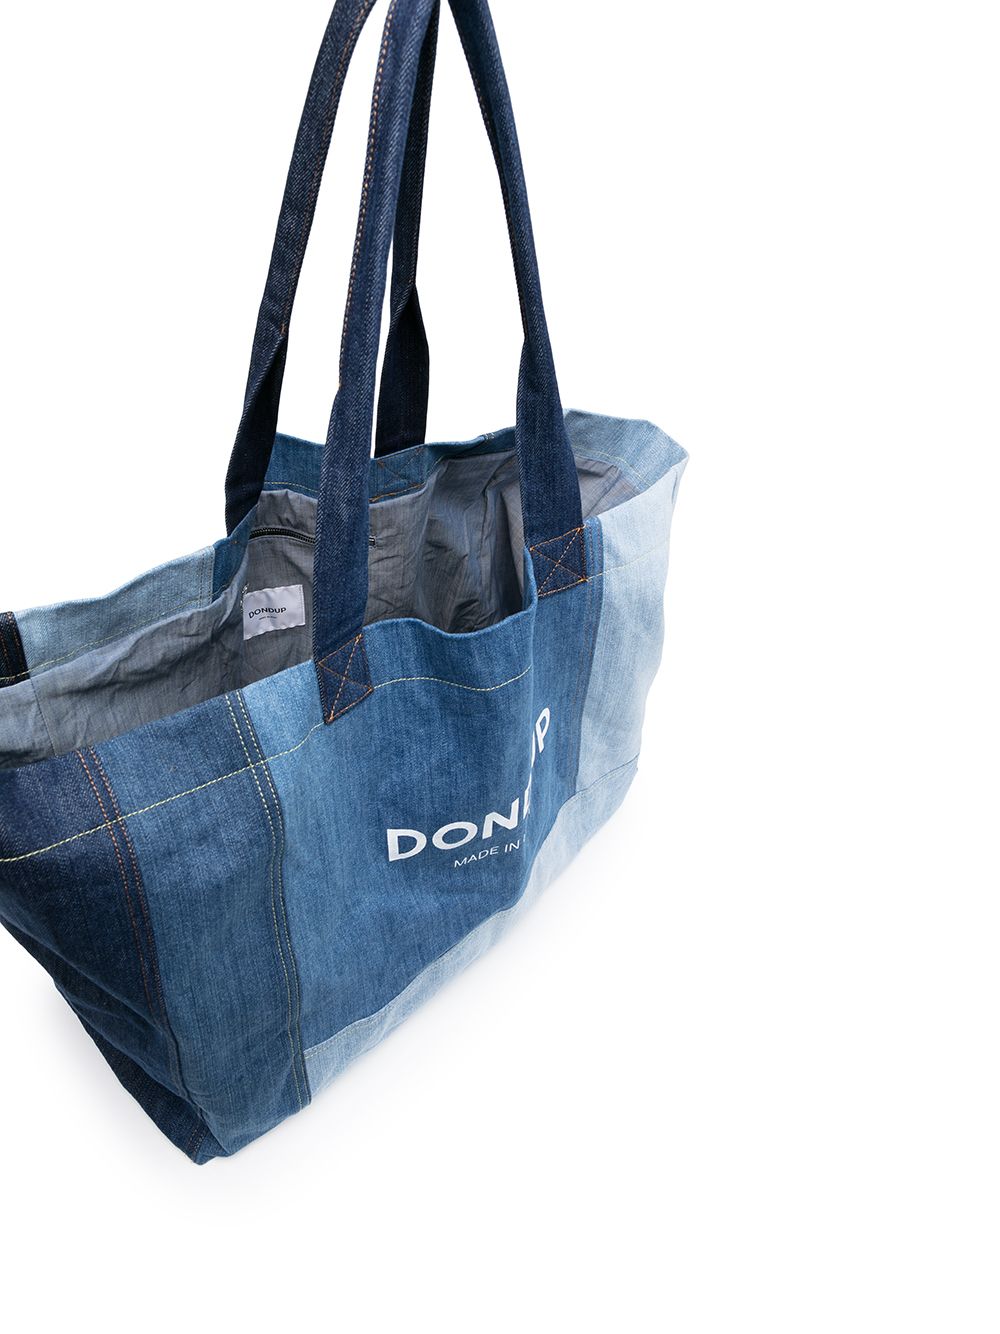 фото Dondup джинсовая сумка-тоут в технике пэчворк с логотипом